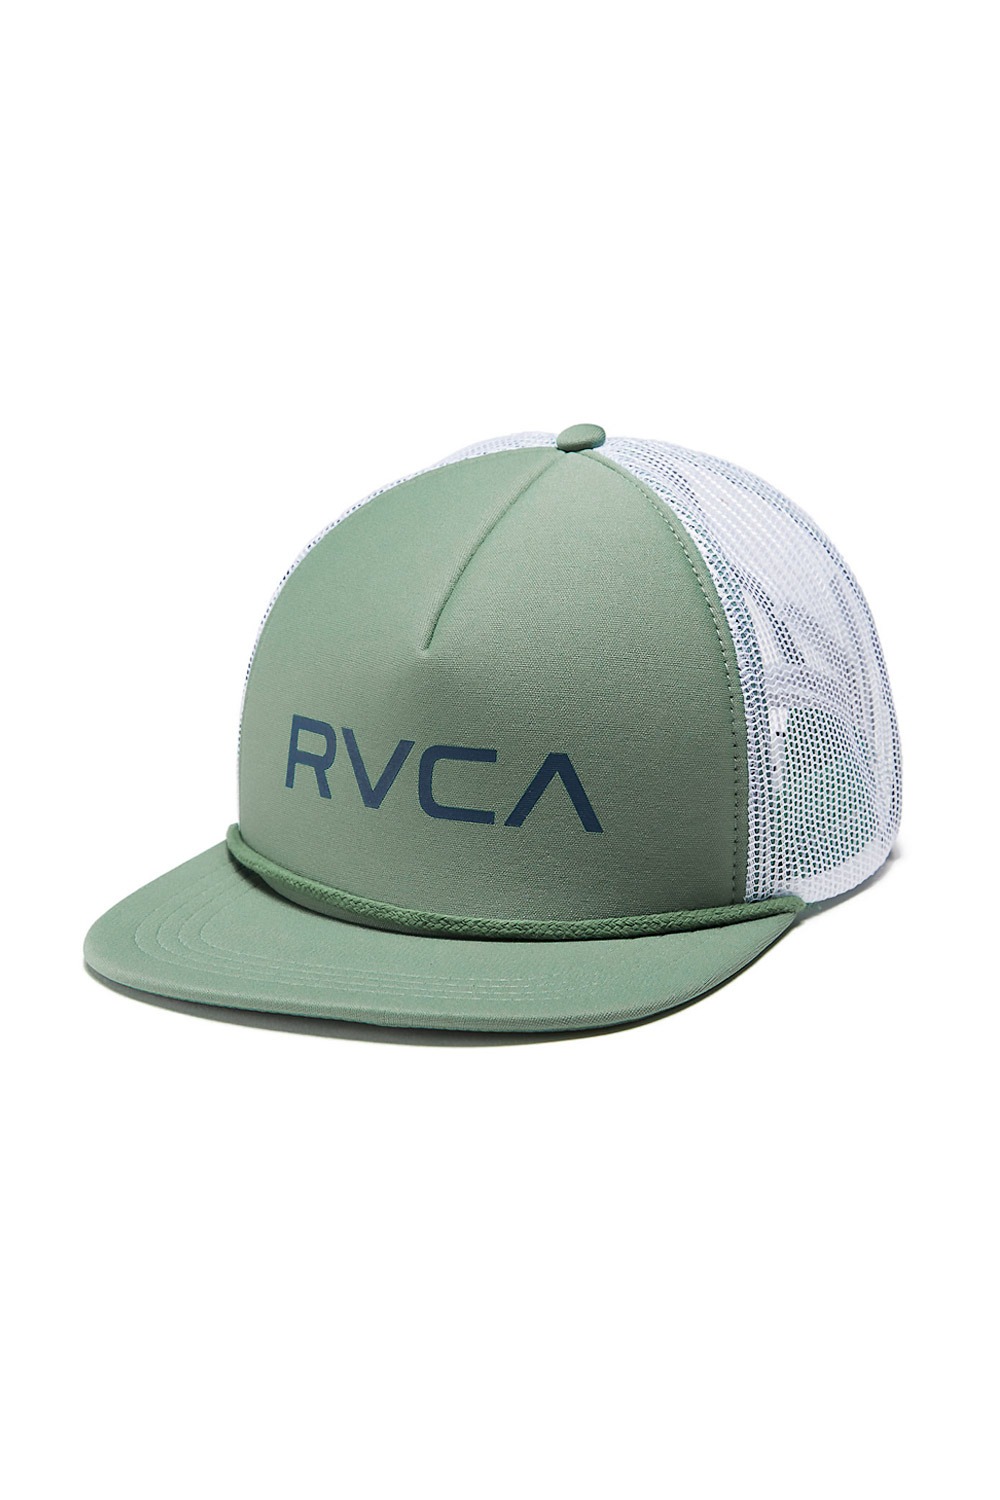 RVCA/루카 매쉬캡 서핑모자 IRA908GR[12]/GRN (GREEN) RVCA RVCA FOAMY TRUCKER MGAHWRFT_FIRA908GR